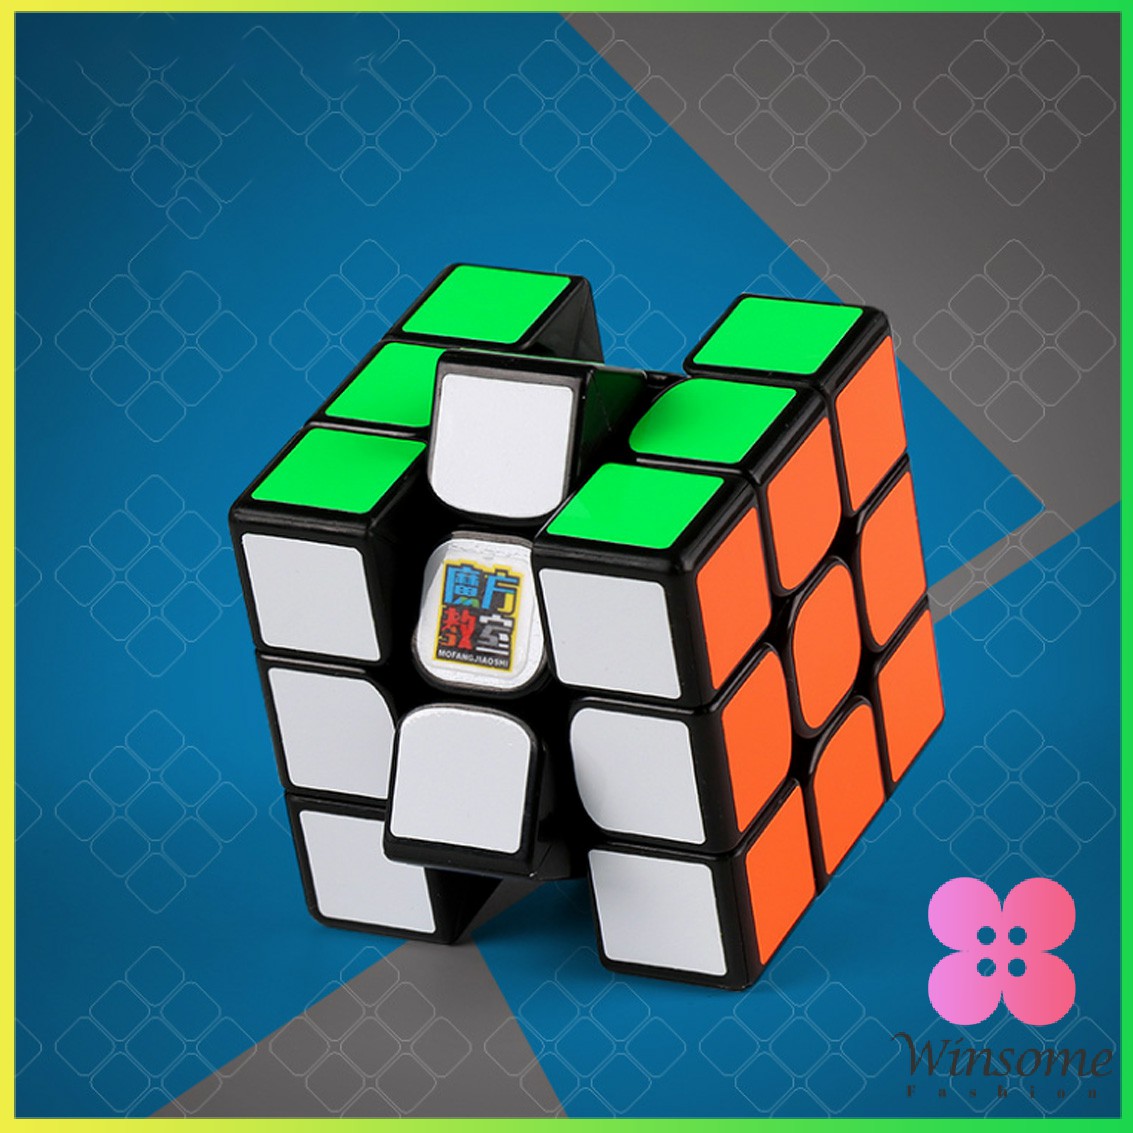 คำอธิบายเพิ่มเติมเกี่ยวกับ Winsome รูบิค 3x3x3 เล่นง่าย ดีไซน์สวย ความเร็วระดับมืออาชีพ รูบิค ลูกบาศก์ ของเล่นลับสมอง Twist P Rubik's Cube & MF3RS Racing Cube